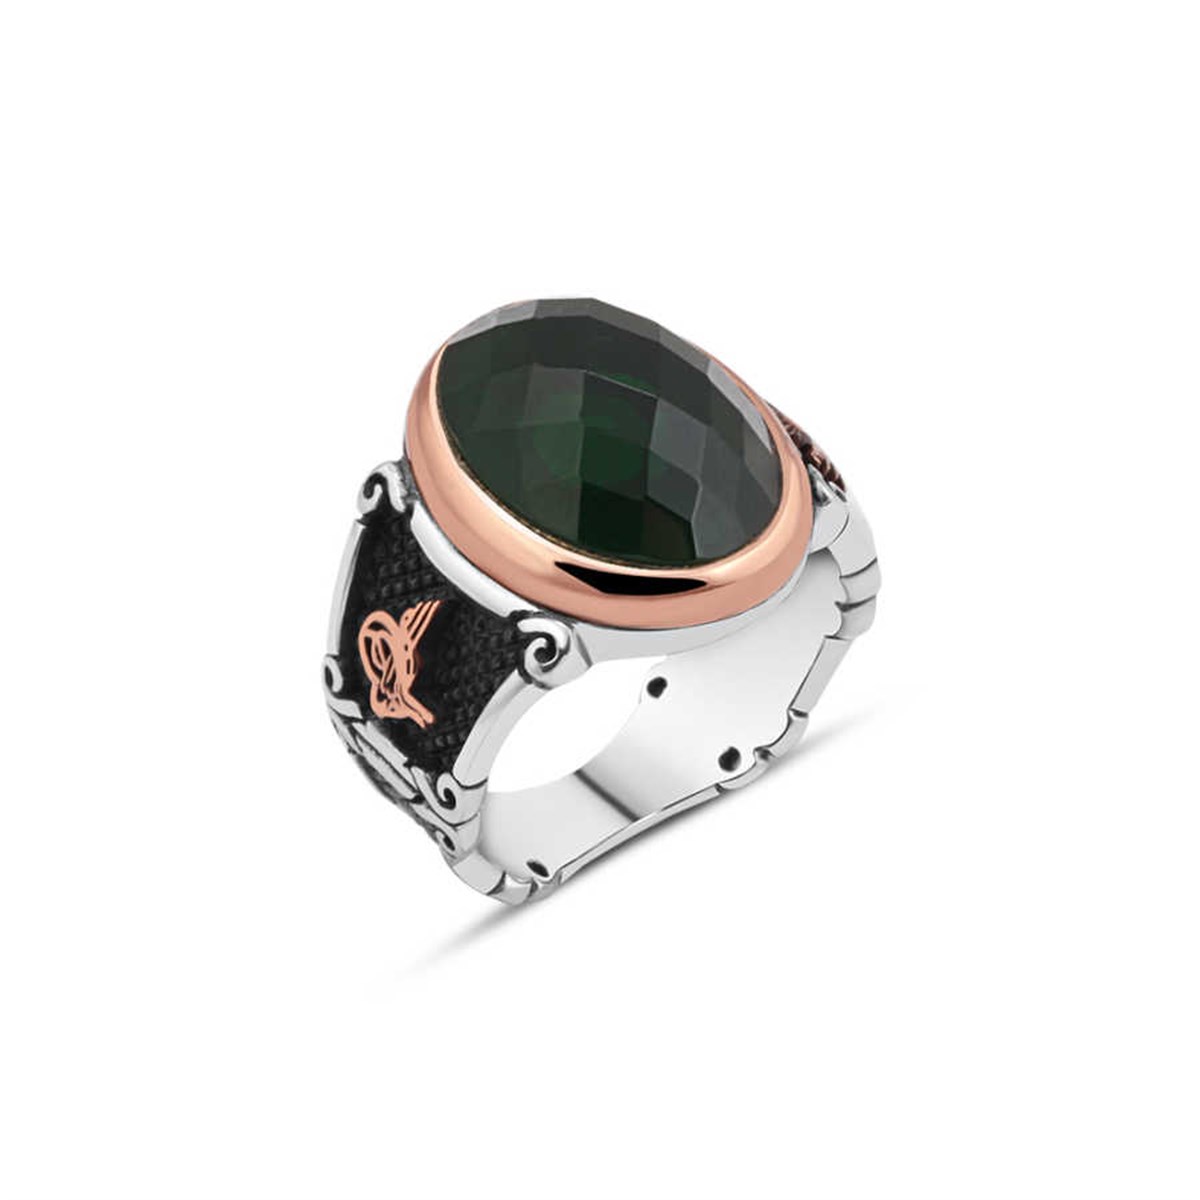 Green Cut Zircon Stone Sterling Silver Men's Ring